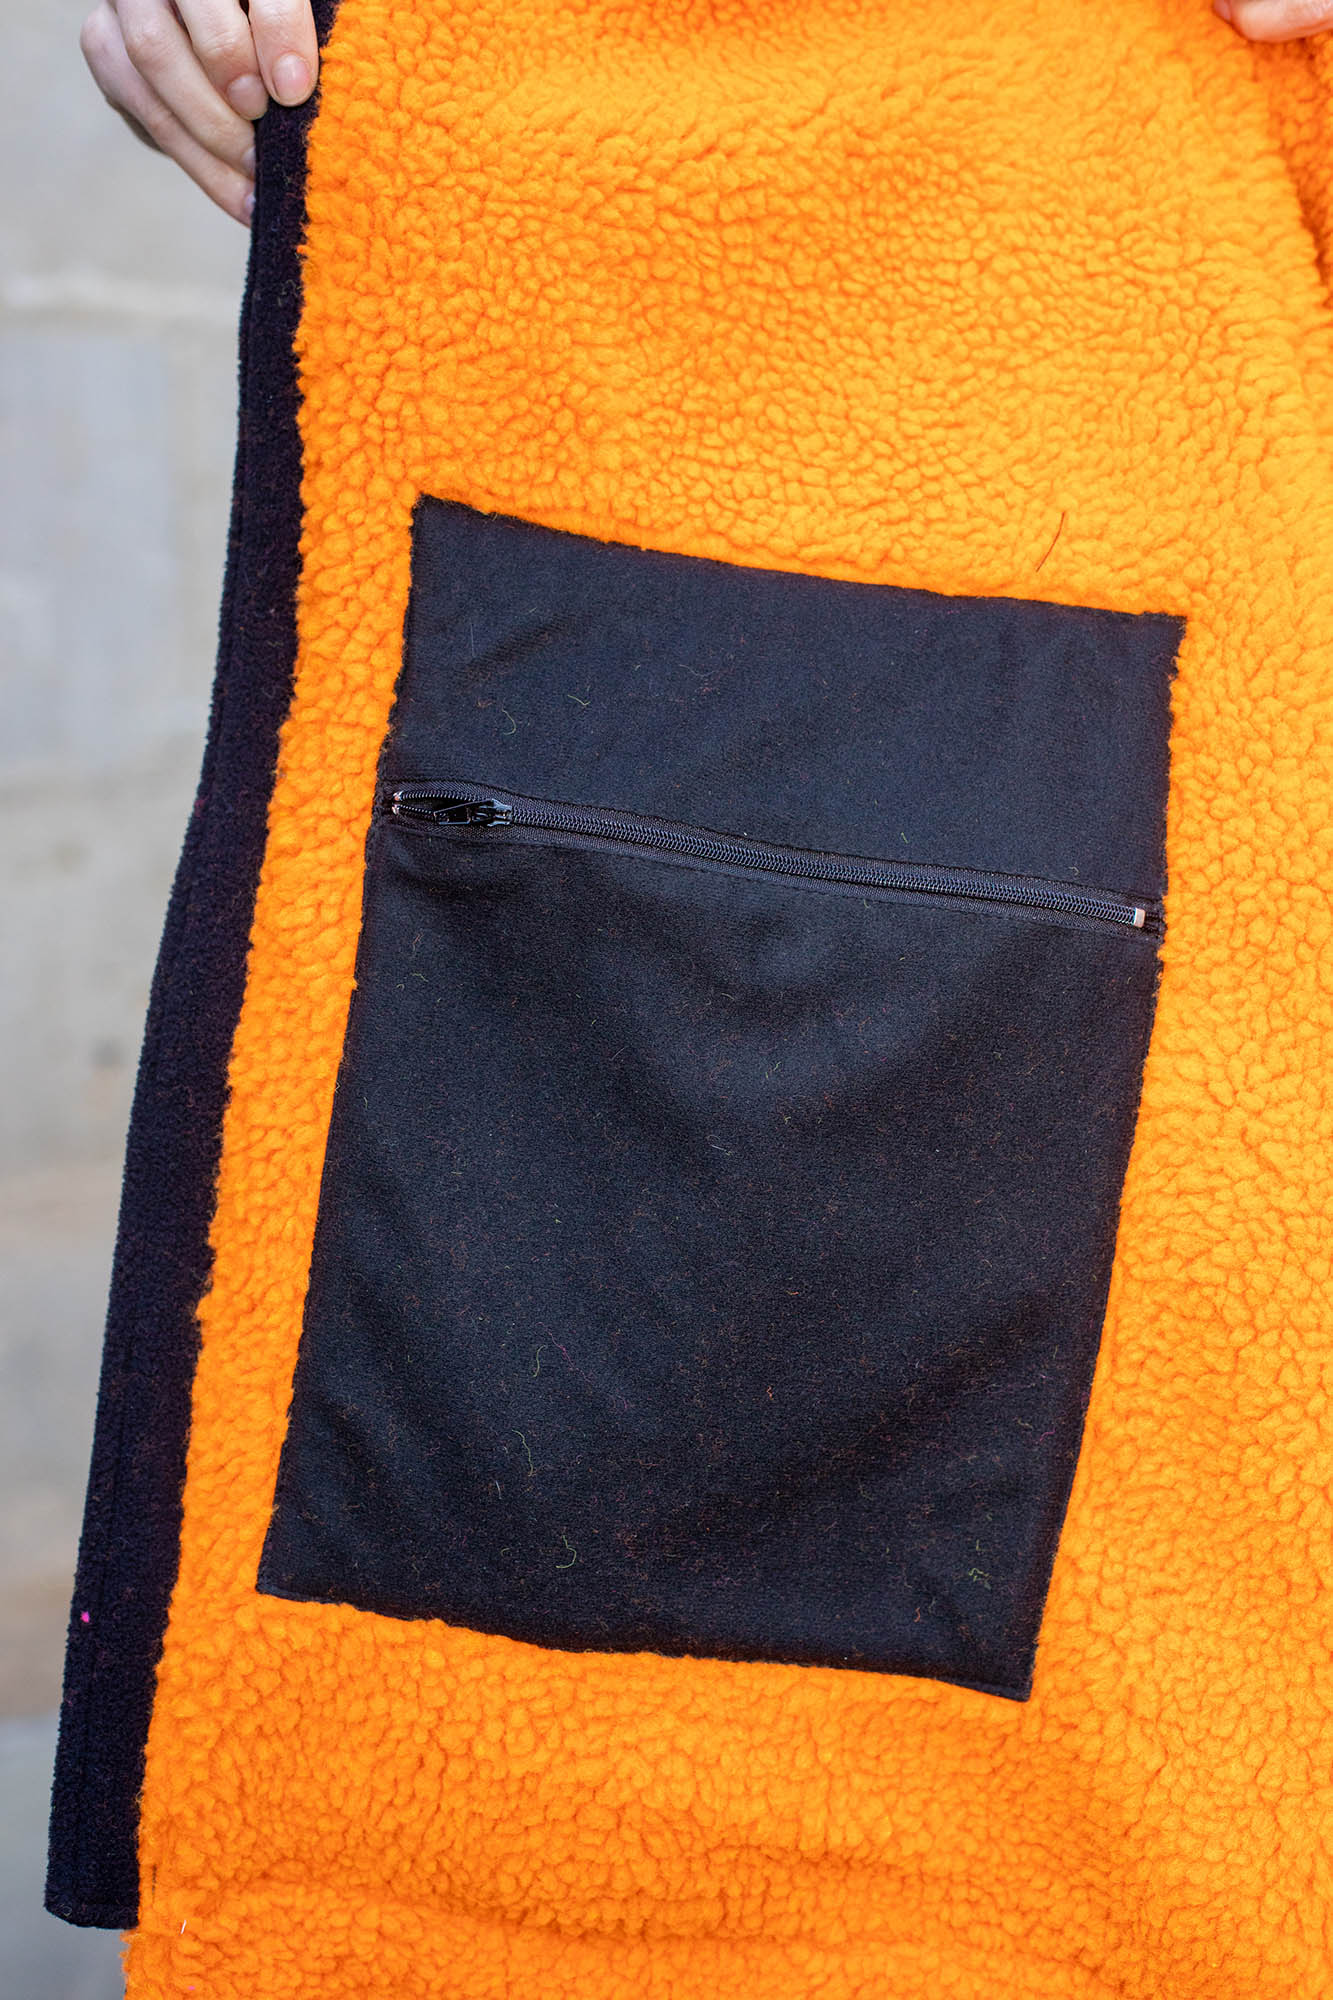 NEW!! Pro Recycled Change Robe - Khaki & Orange - Slouchy